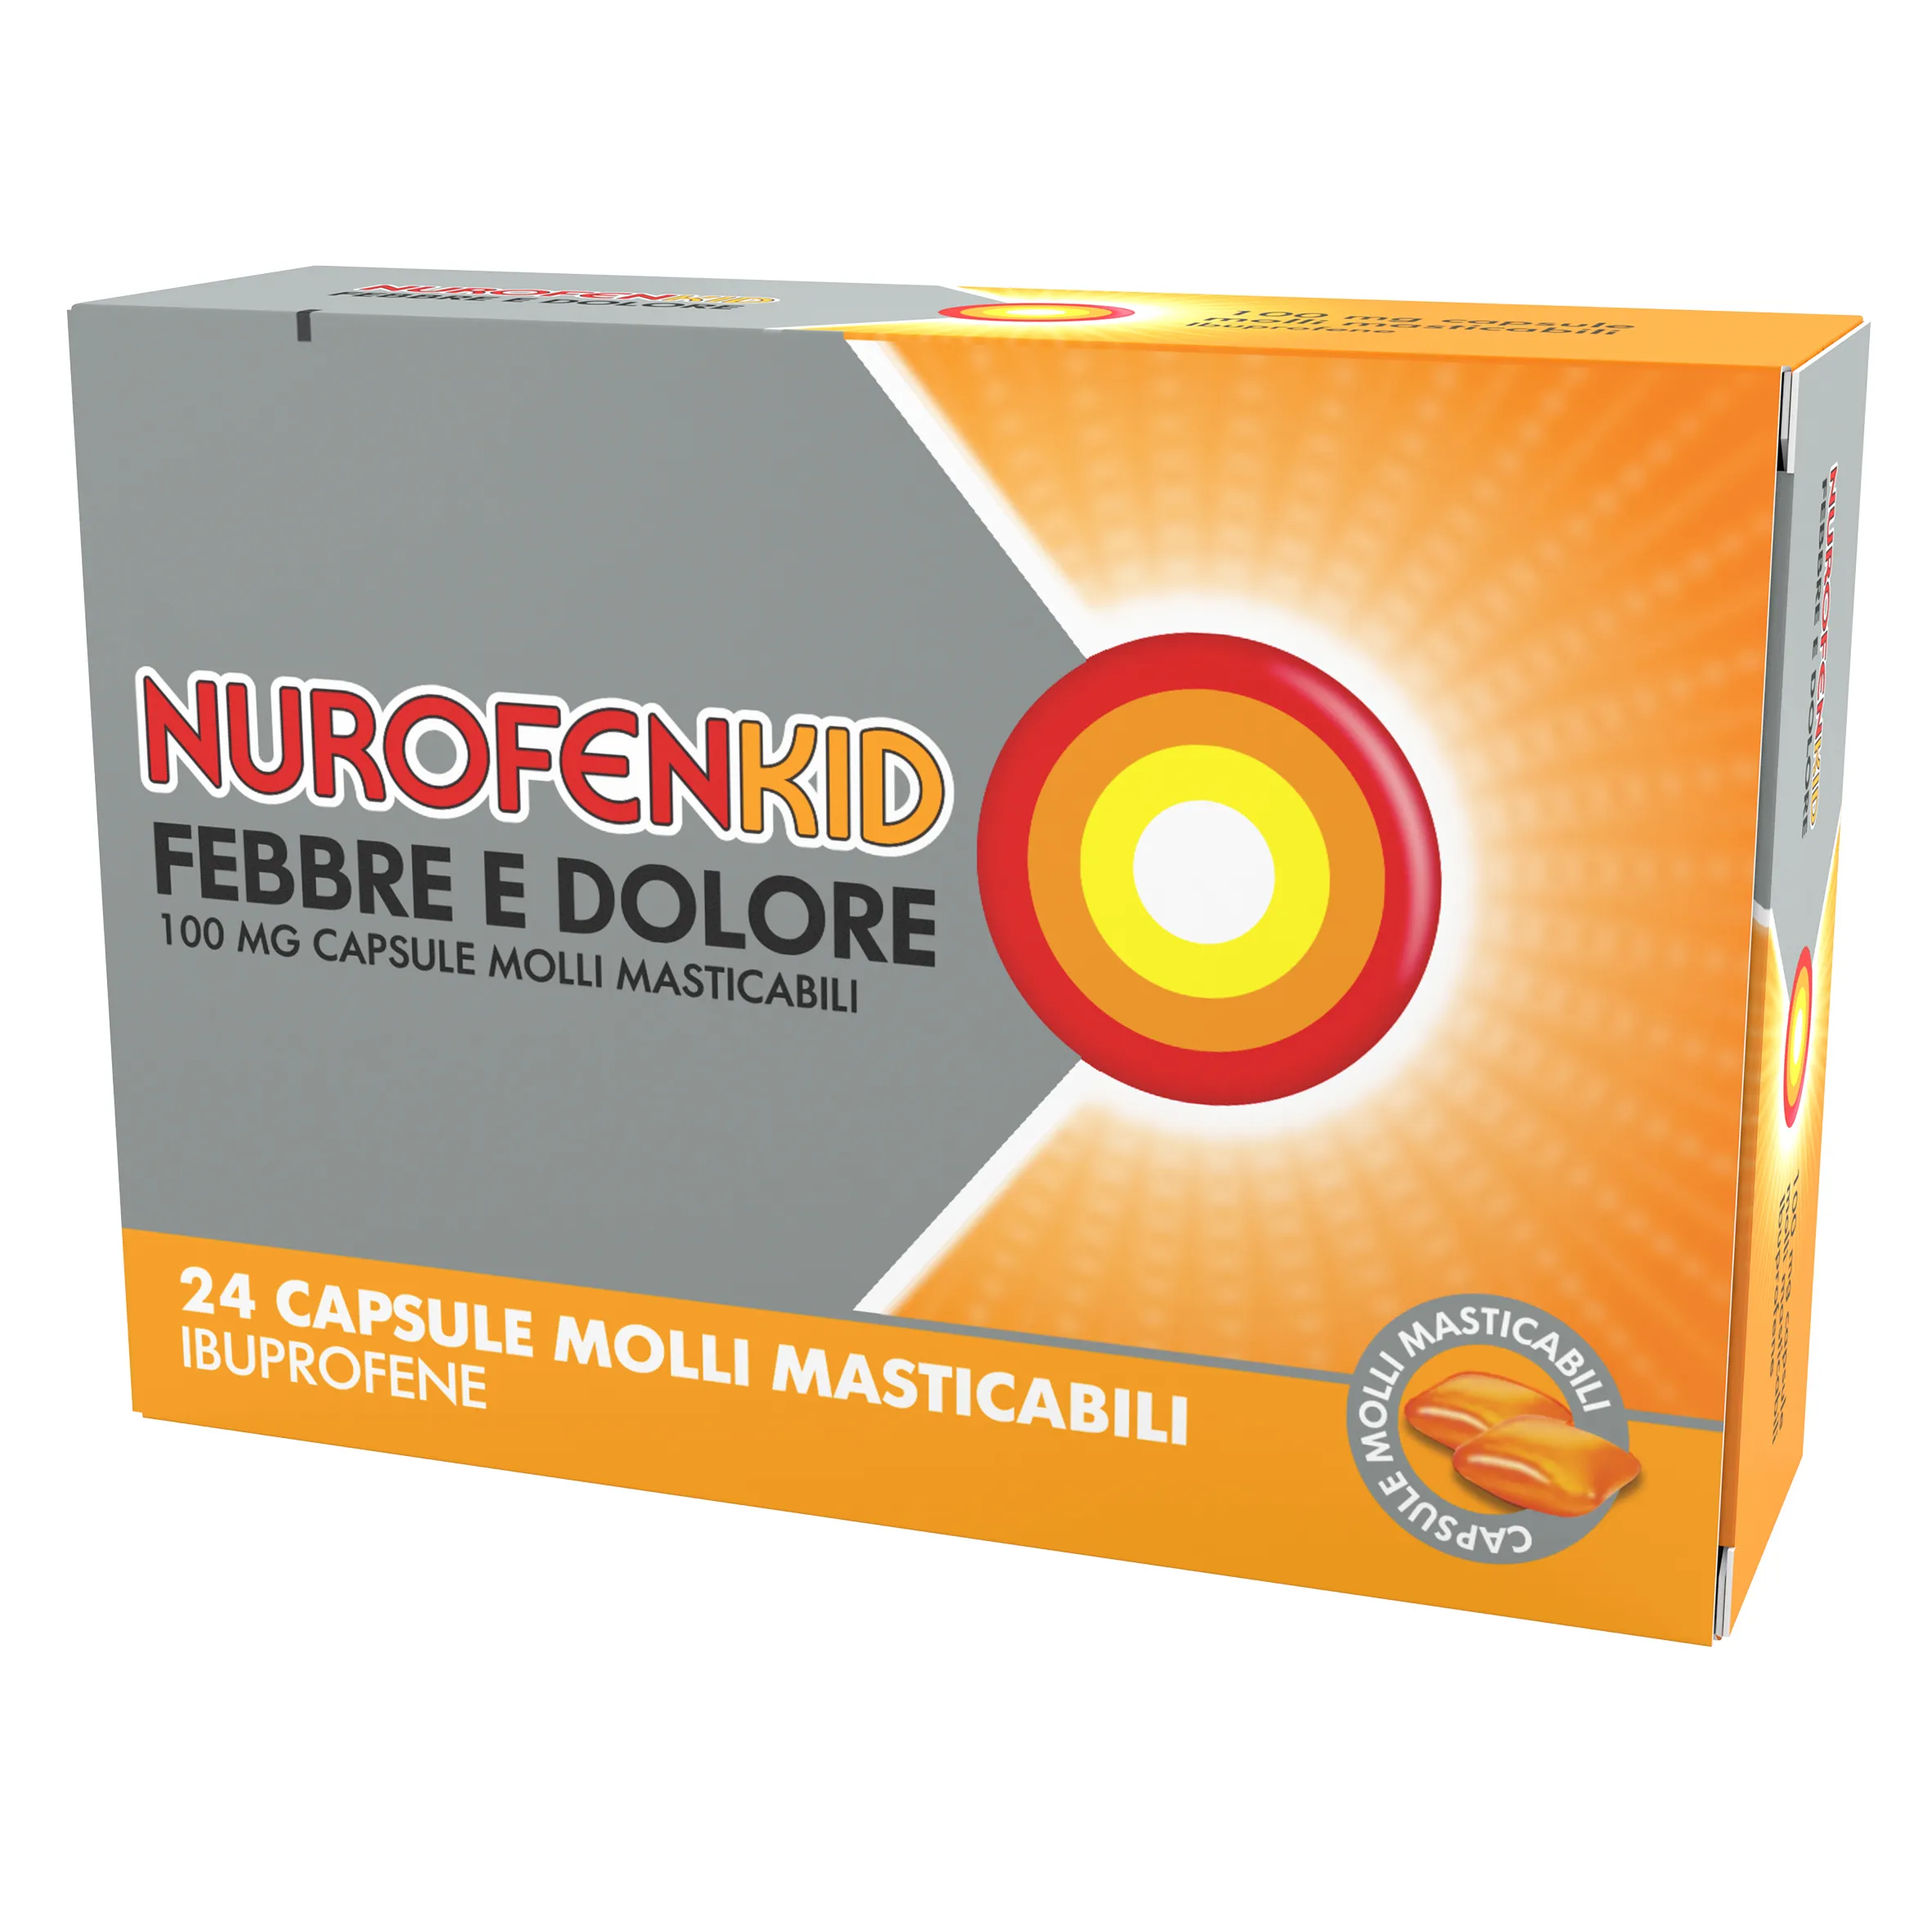 NurofenKid Febbre e Dolore 100 mg Ibuprofene 24 Capsule Molli Masticabili